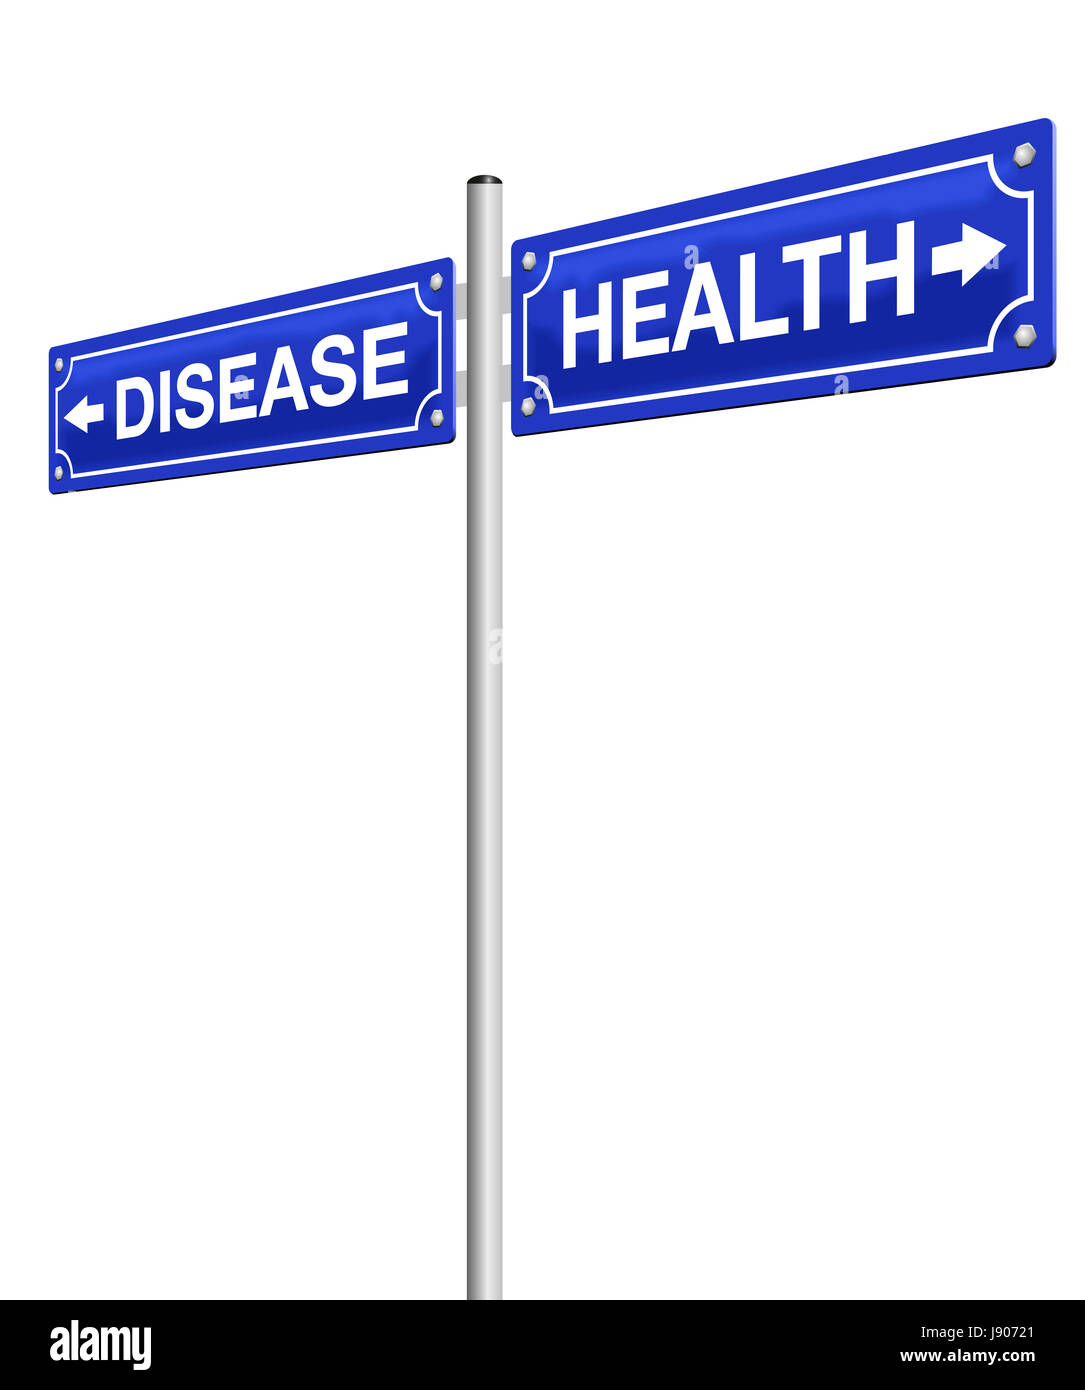 La santé et la maladie, écrit sur des panneaux de direction dans des directions opposées. Illustration sur fond blanc. Banque D'Images